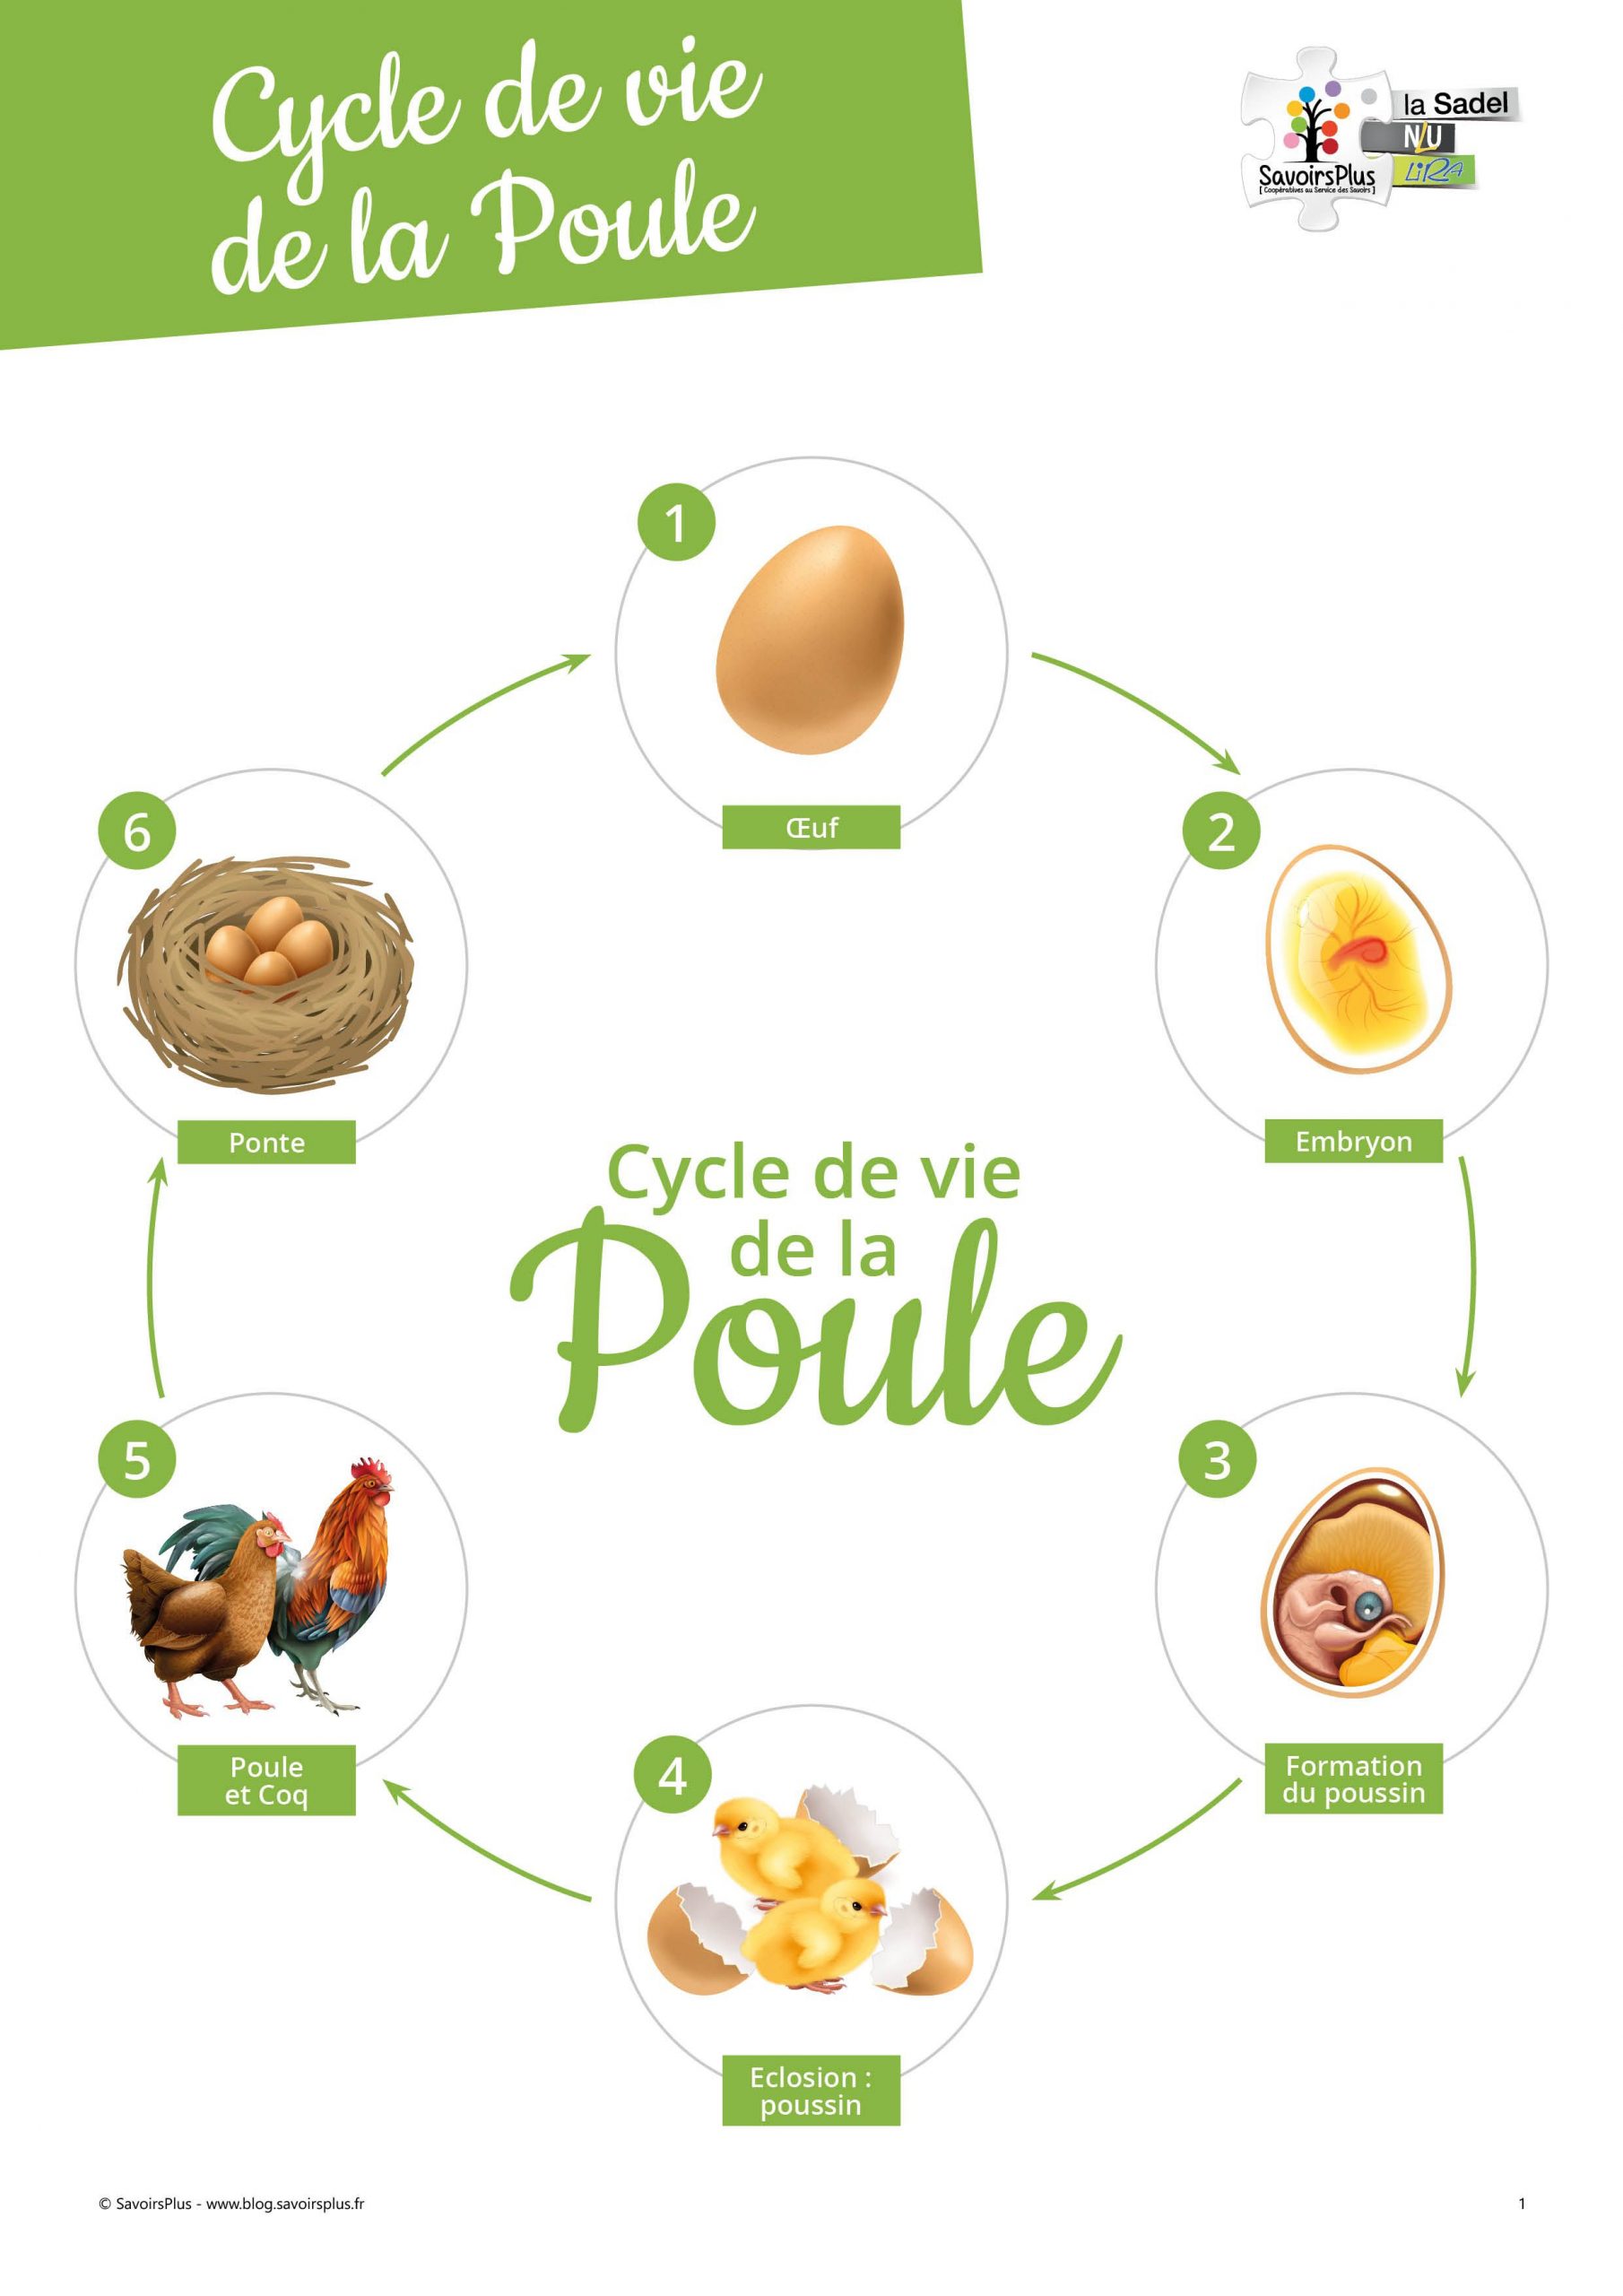 Téléchargement - Cycle De Vie De La Poule - Le Blog Savoirsplus En 2021 pour Histoire Sacquentielle Oeuf Poule